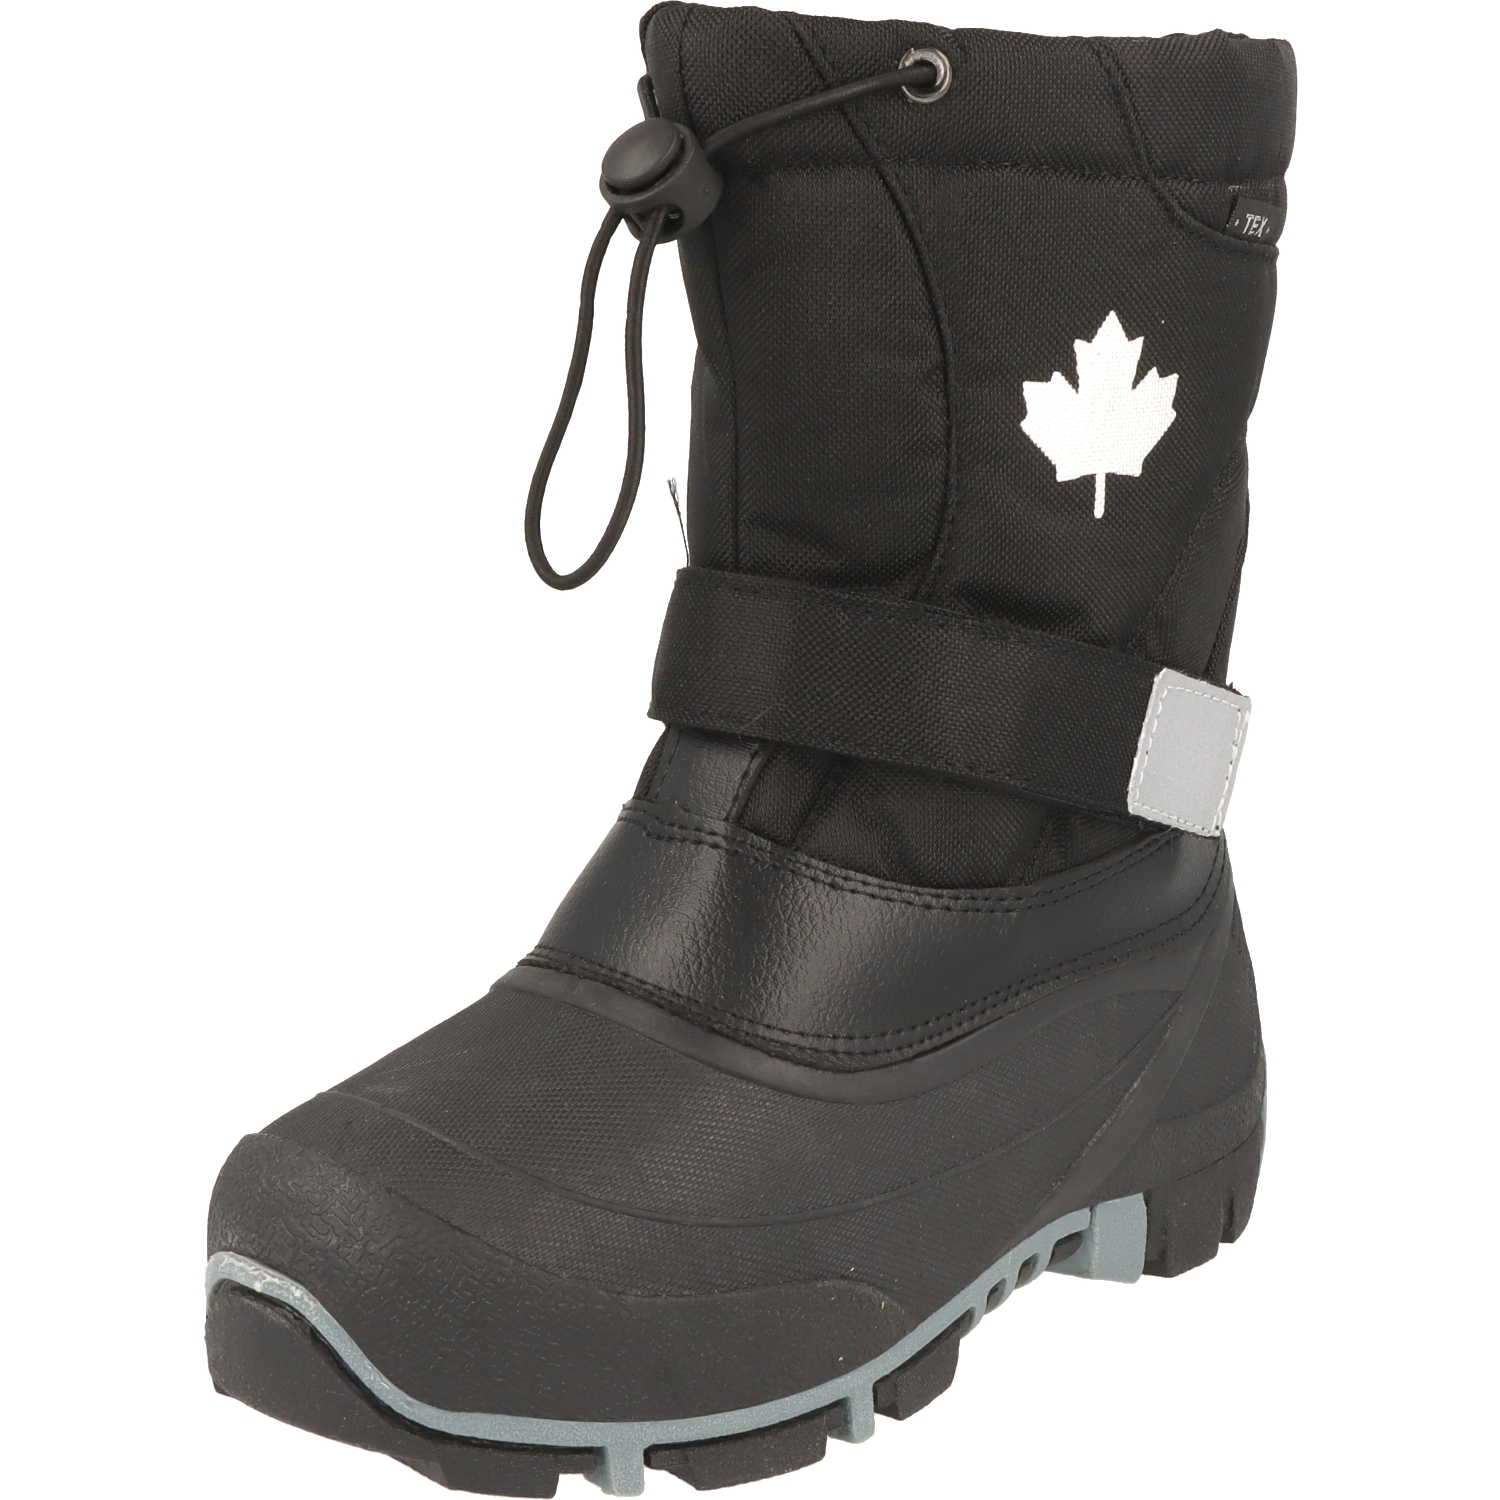 Indigo Canadians Kinder Schuhe 467-185 Winter Stiefel Snow Boots schwarz